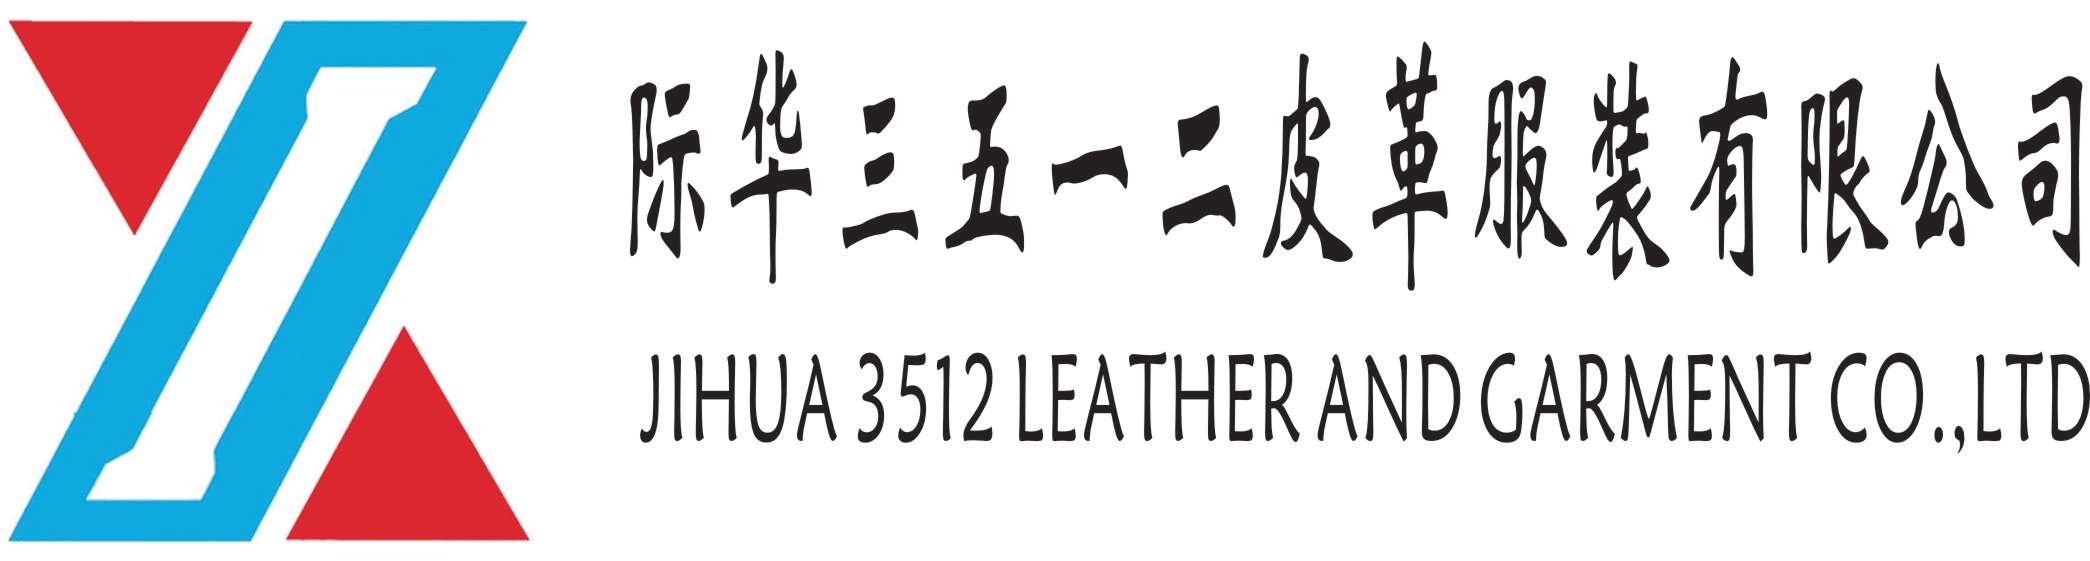 际华三五一二皮革服装有限公司-新兴际华集团成员企业